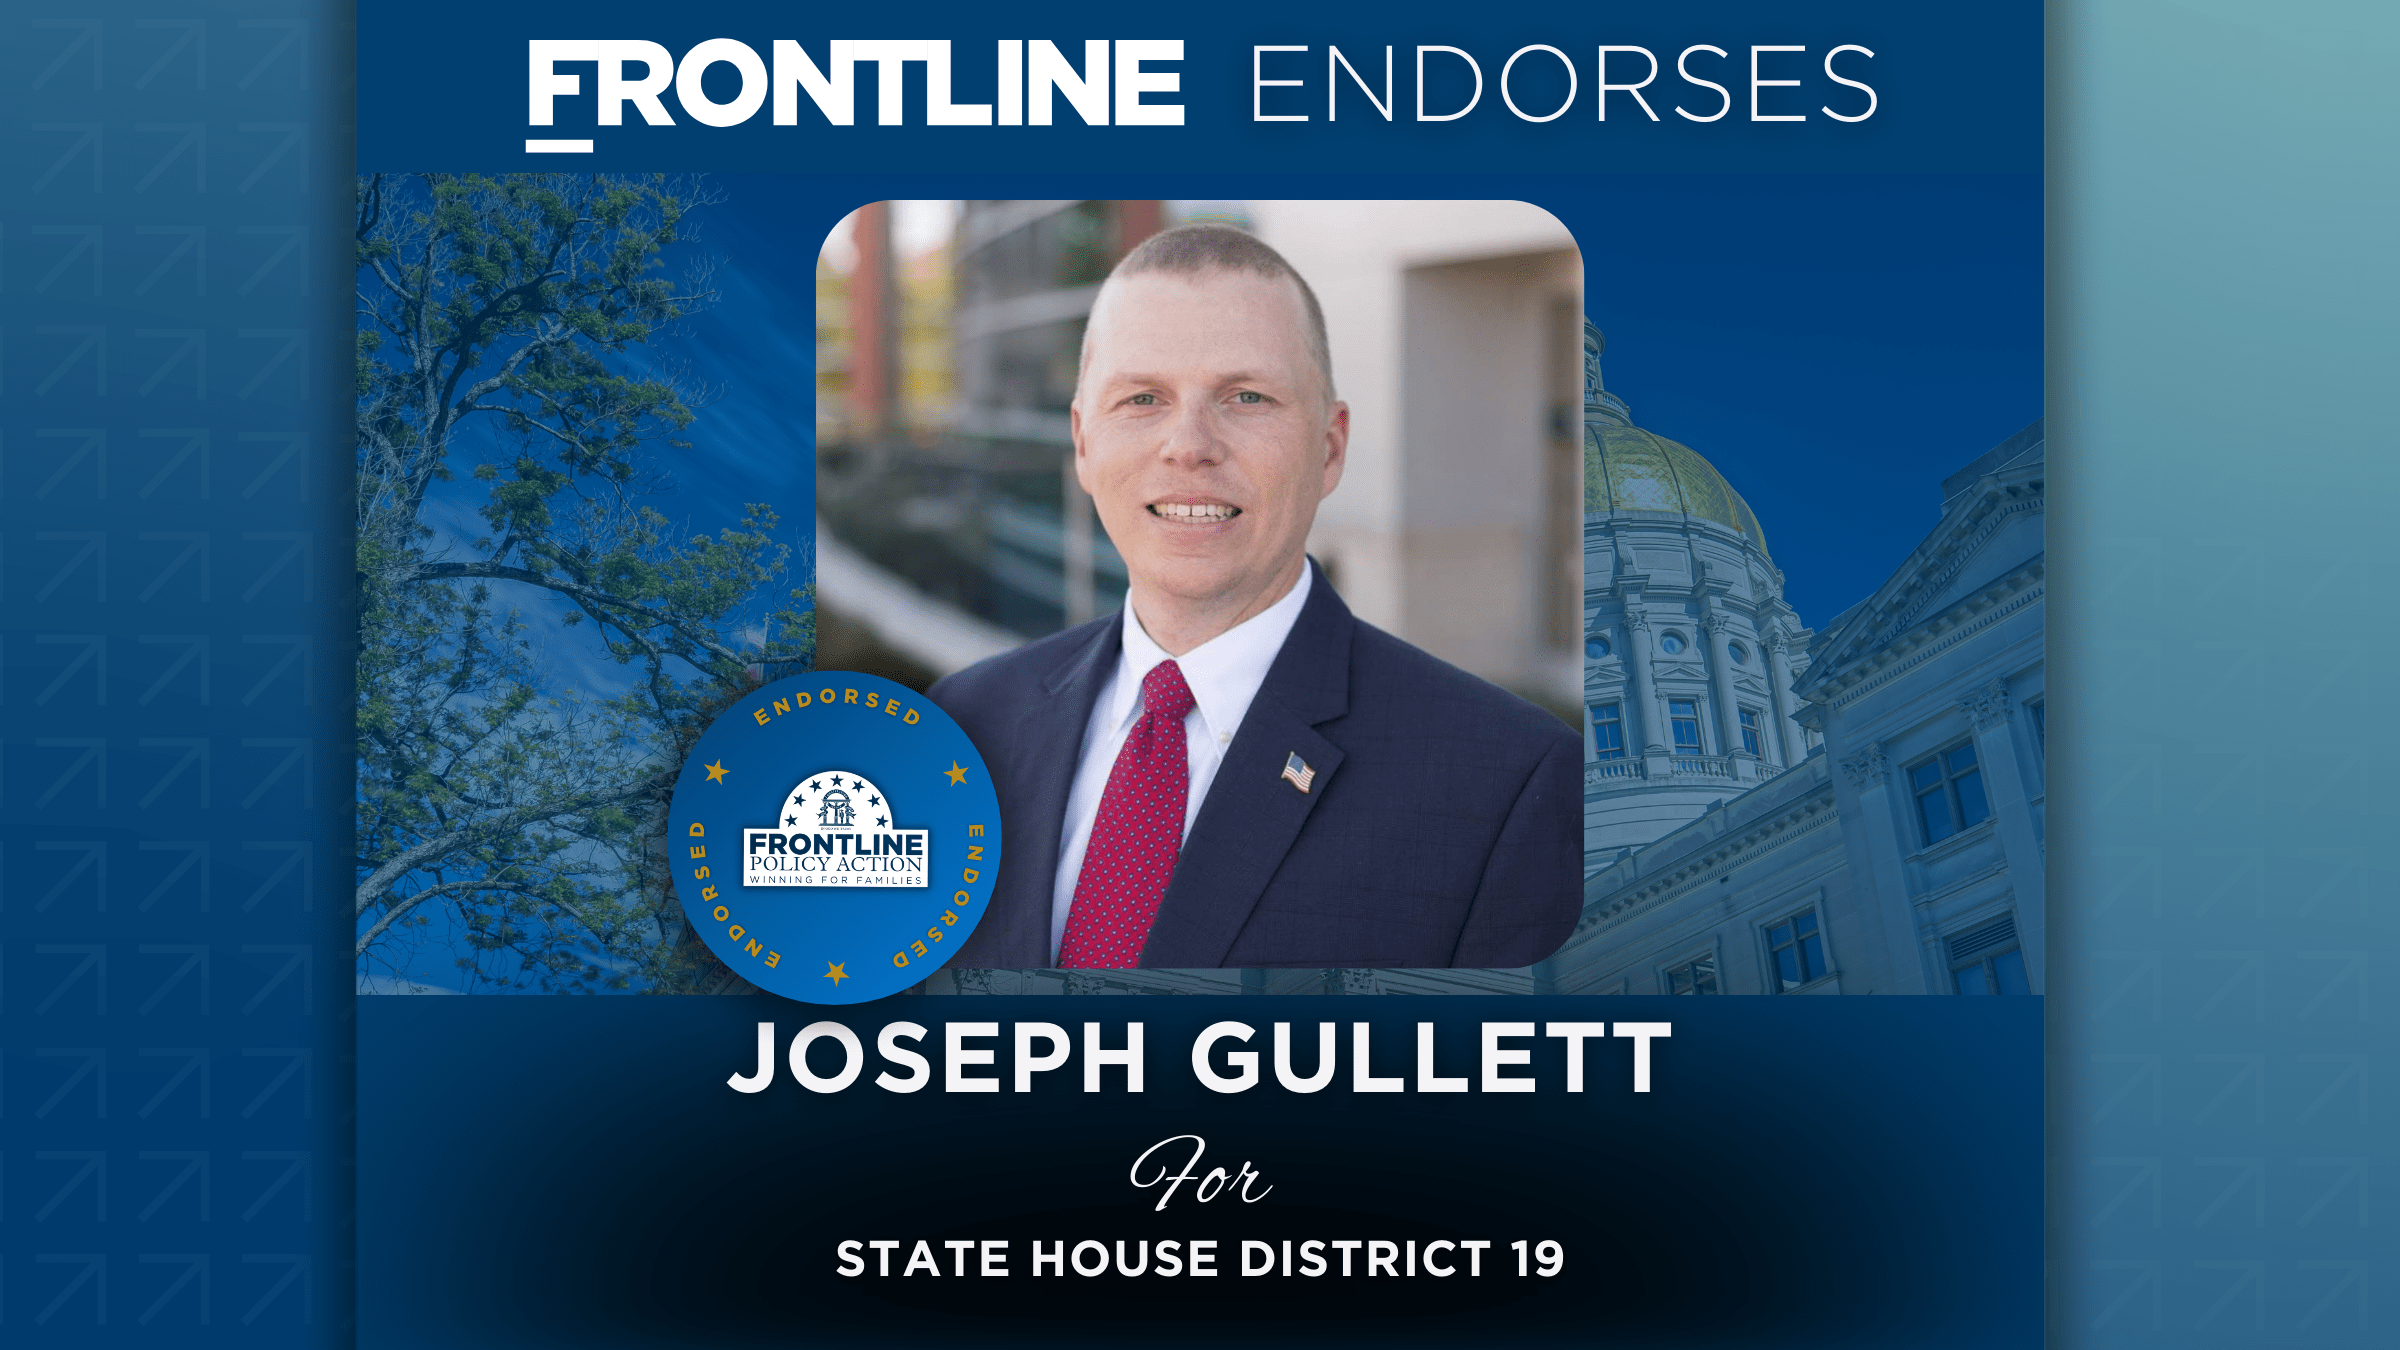 BREAKING: Frontline Endorses Joseph Gullett for State House District 19